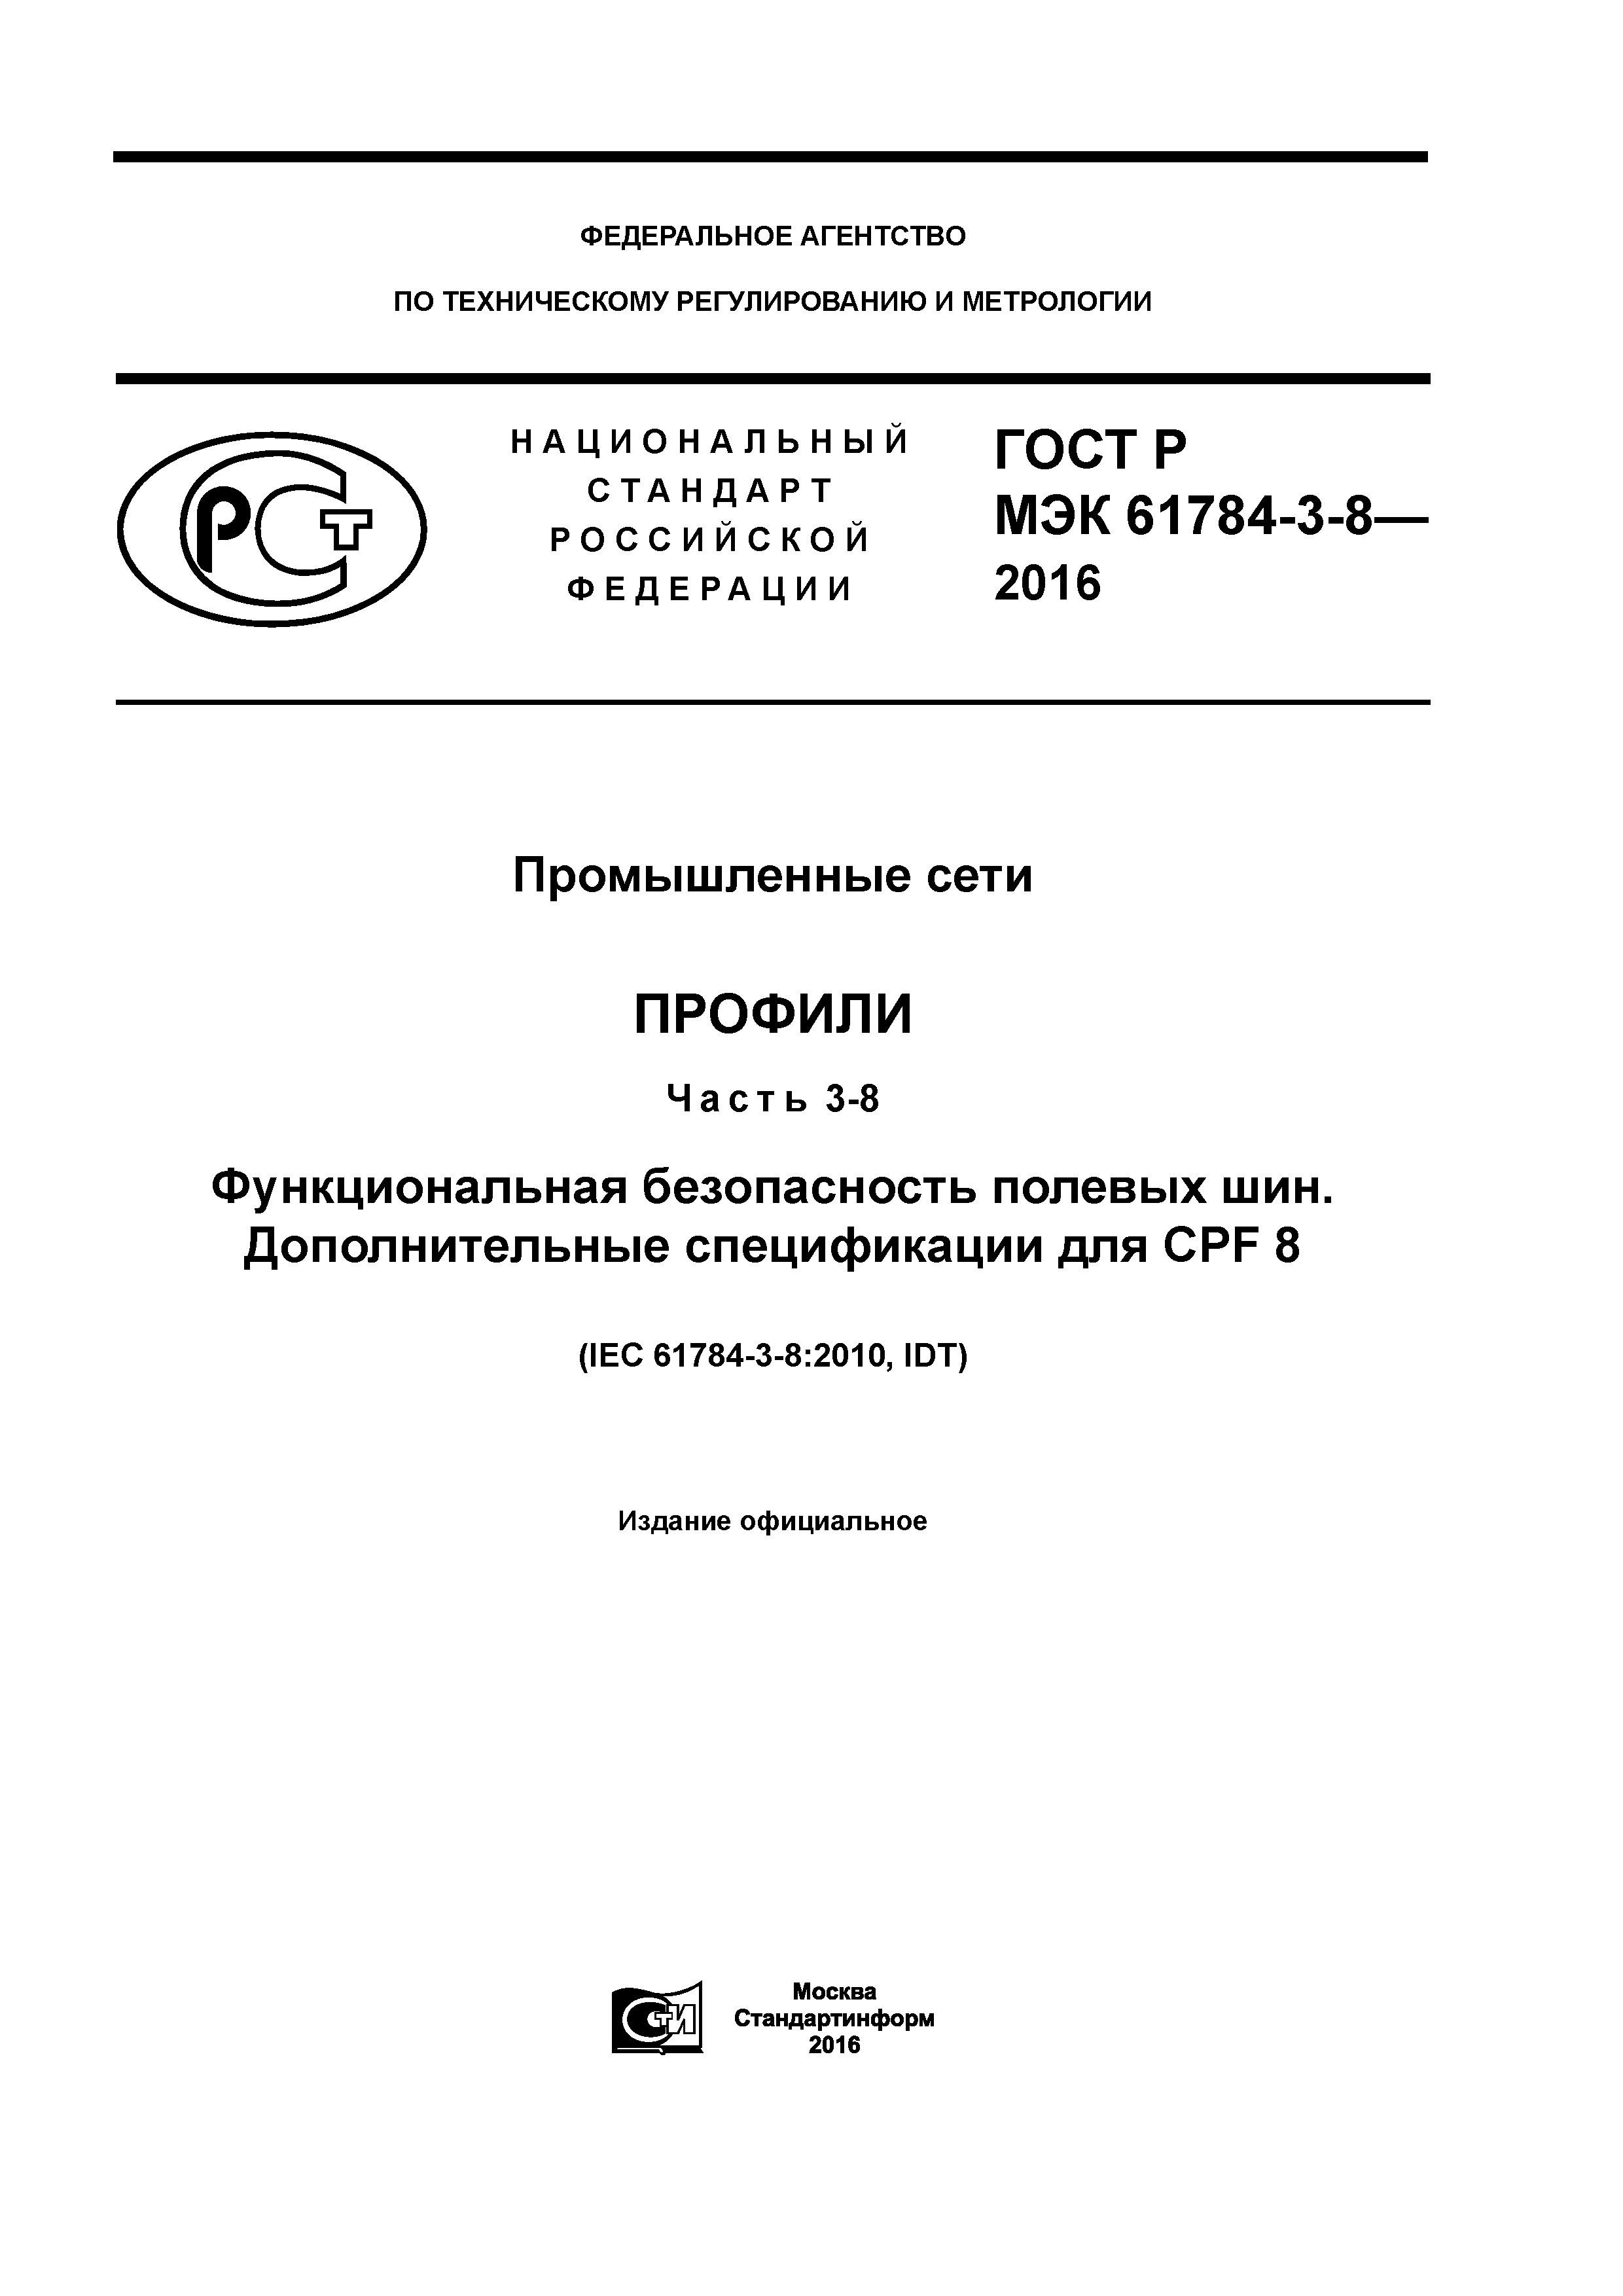 ГОСТ Р МЭК 61784-3-8-2016